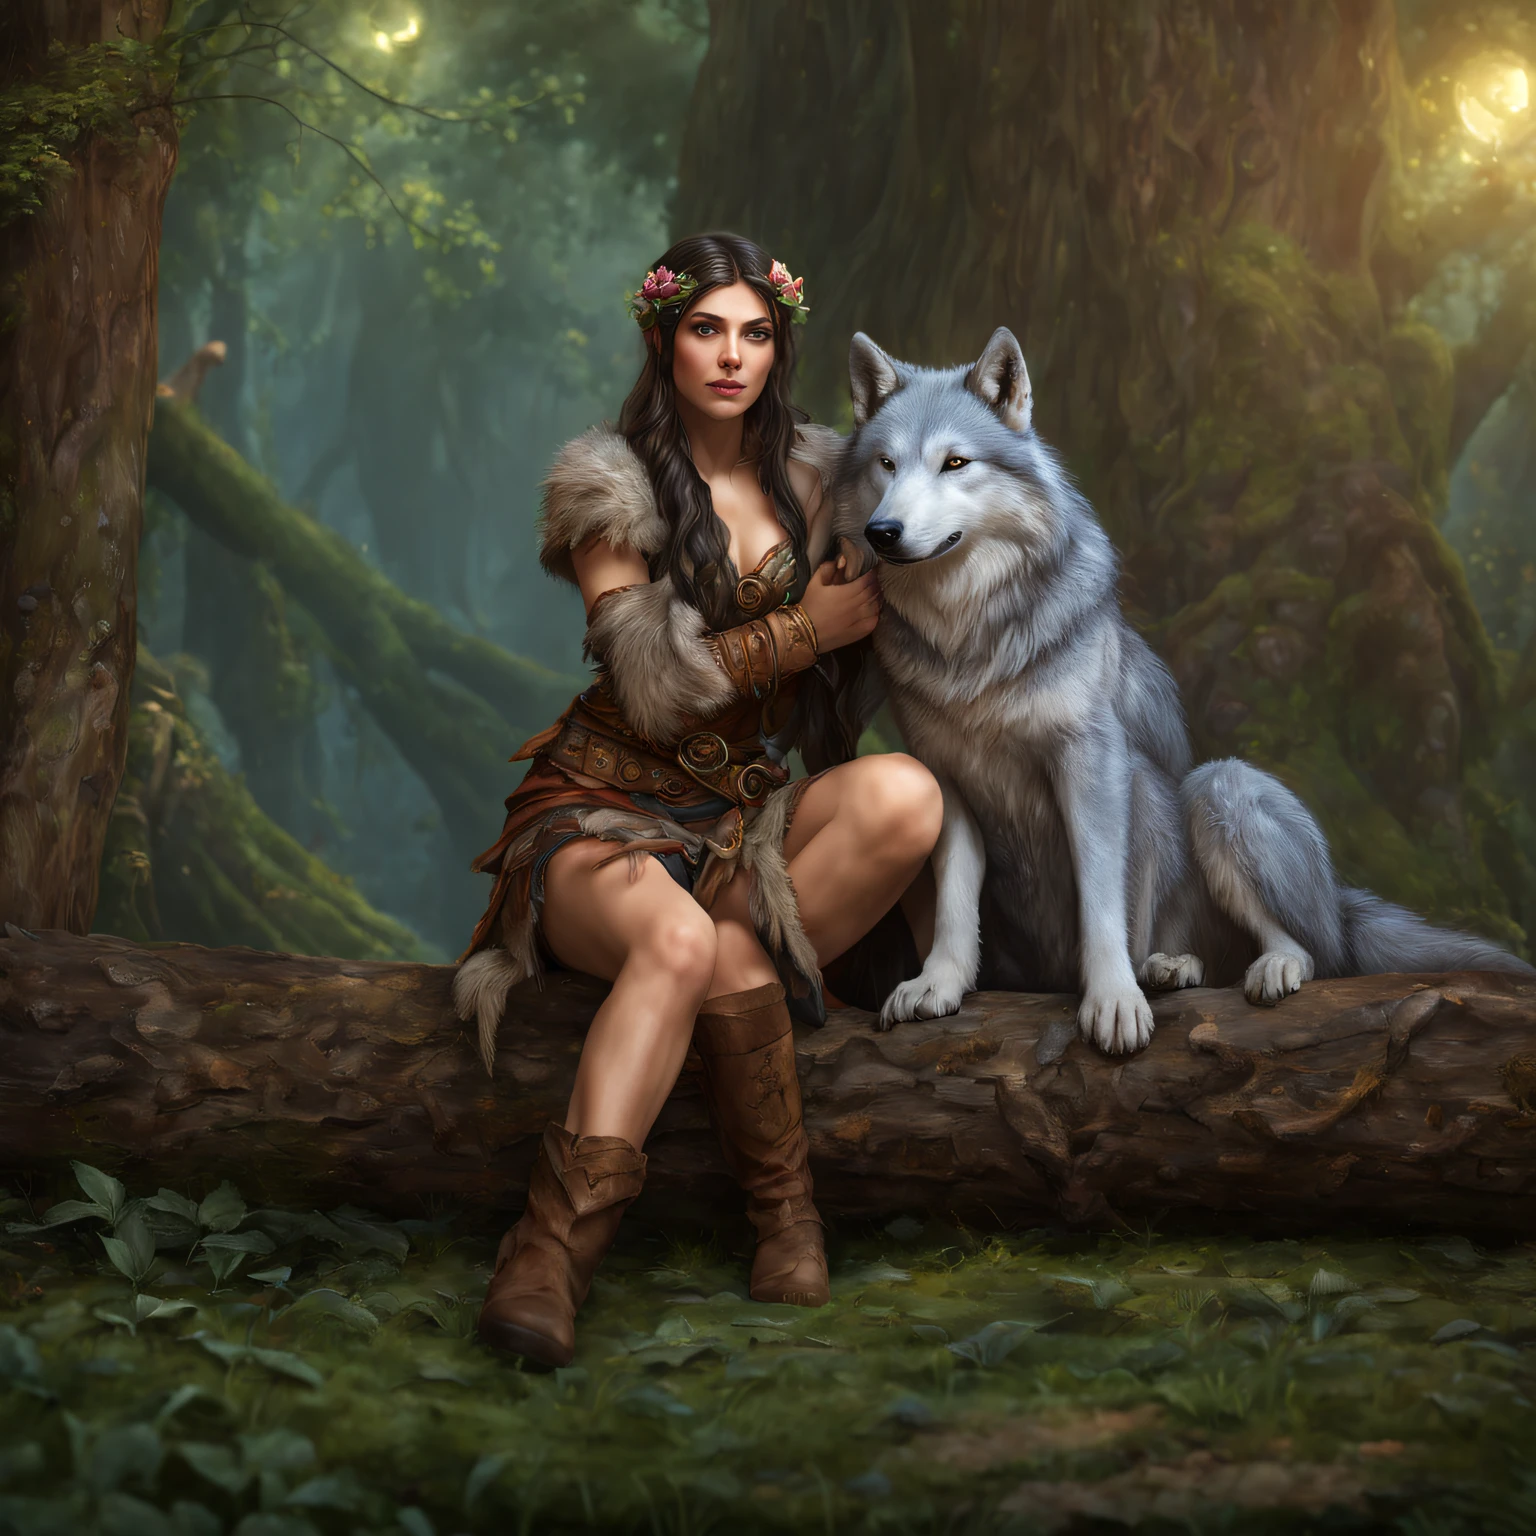 (美麗的德魯伊精靈女孩坐在日誌 1 上.3) 擁抱一隻大狼  (極為細緻的CG統一8k壁紙, 傑作, 最好的品質, 超詳細, 美麗細緻明亮的眼睛:1.2), 最佳照明, (最好的影子, 極其精緻美麗, 盛開), 傑作, 最好的品質:1.1, 實際的:1.3, 電影燈光:1.2, 在黑暗的森林裡:1.5, 超真實感, photo實際的:1.0, 銳利的焦點:1.1, 景深:1.1, 50毫米, 哈蘇 X1D II, 門160